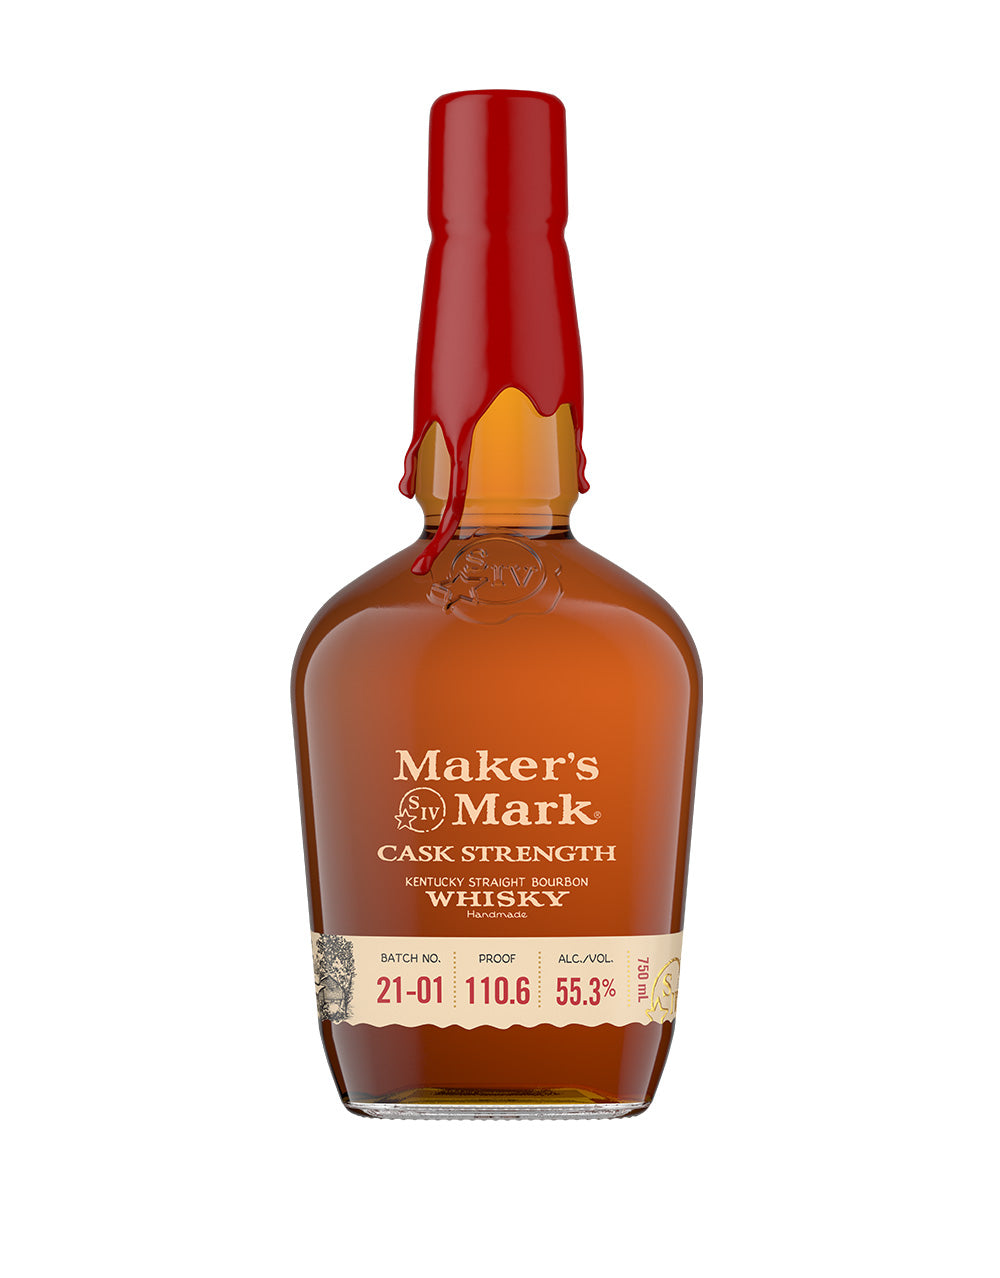 Maker's Mark Cask Strength Bourbon Whisky | ReserveBar